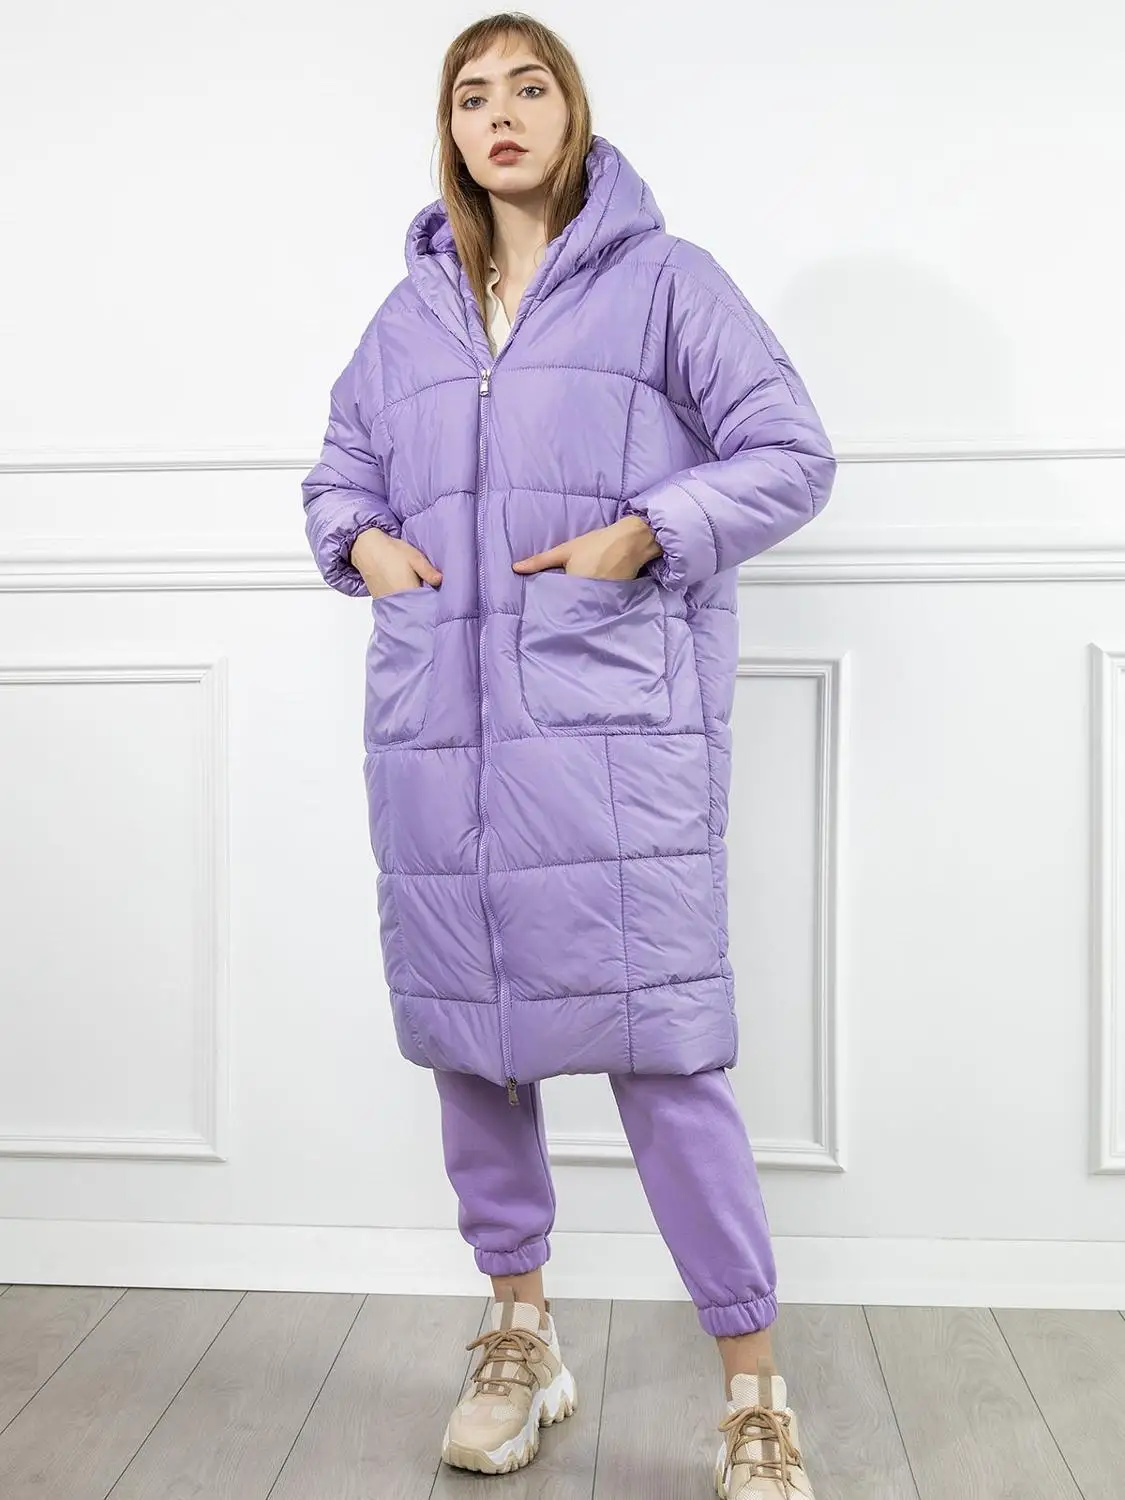 Winter Oversized Coat Women Poffer Jacket Thicker Warm Long Sleeve Outwear